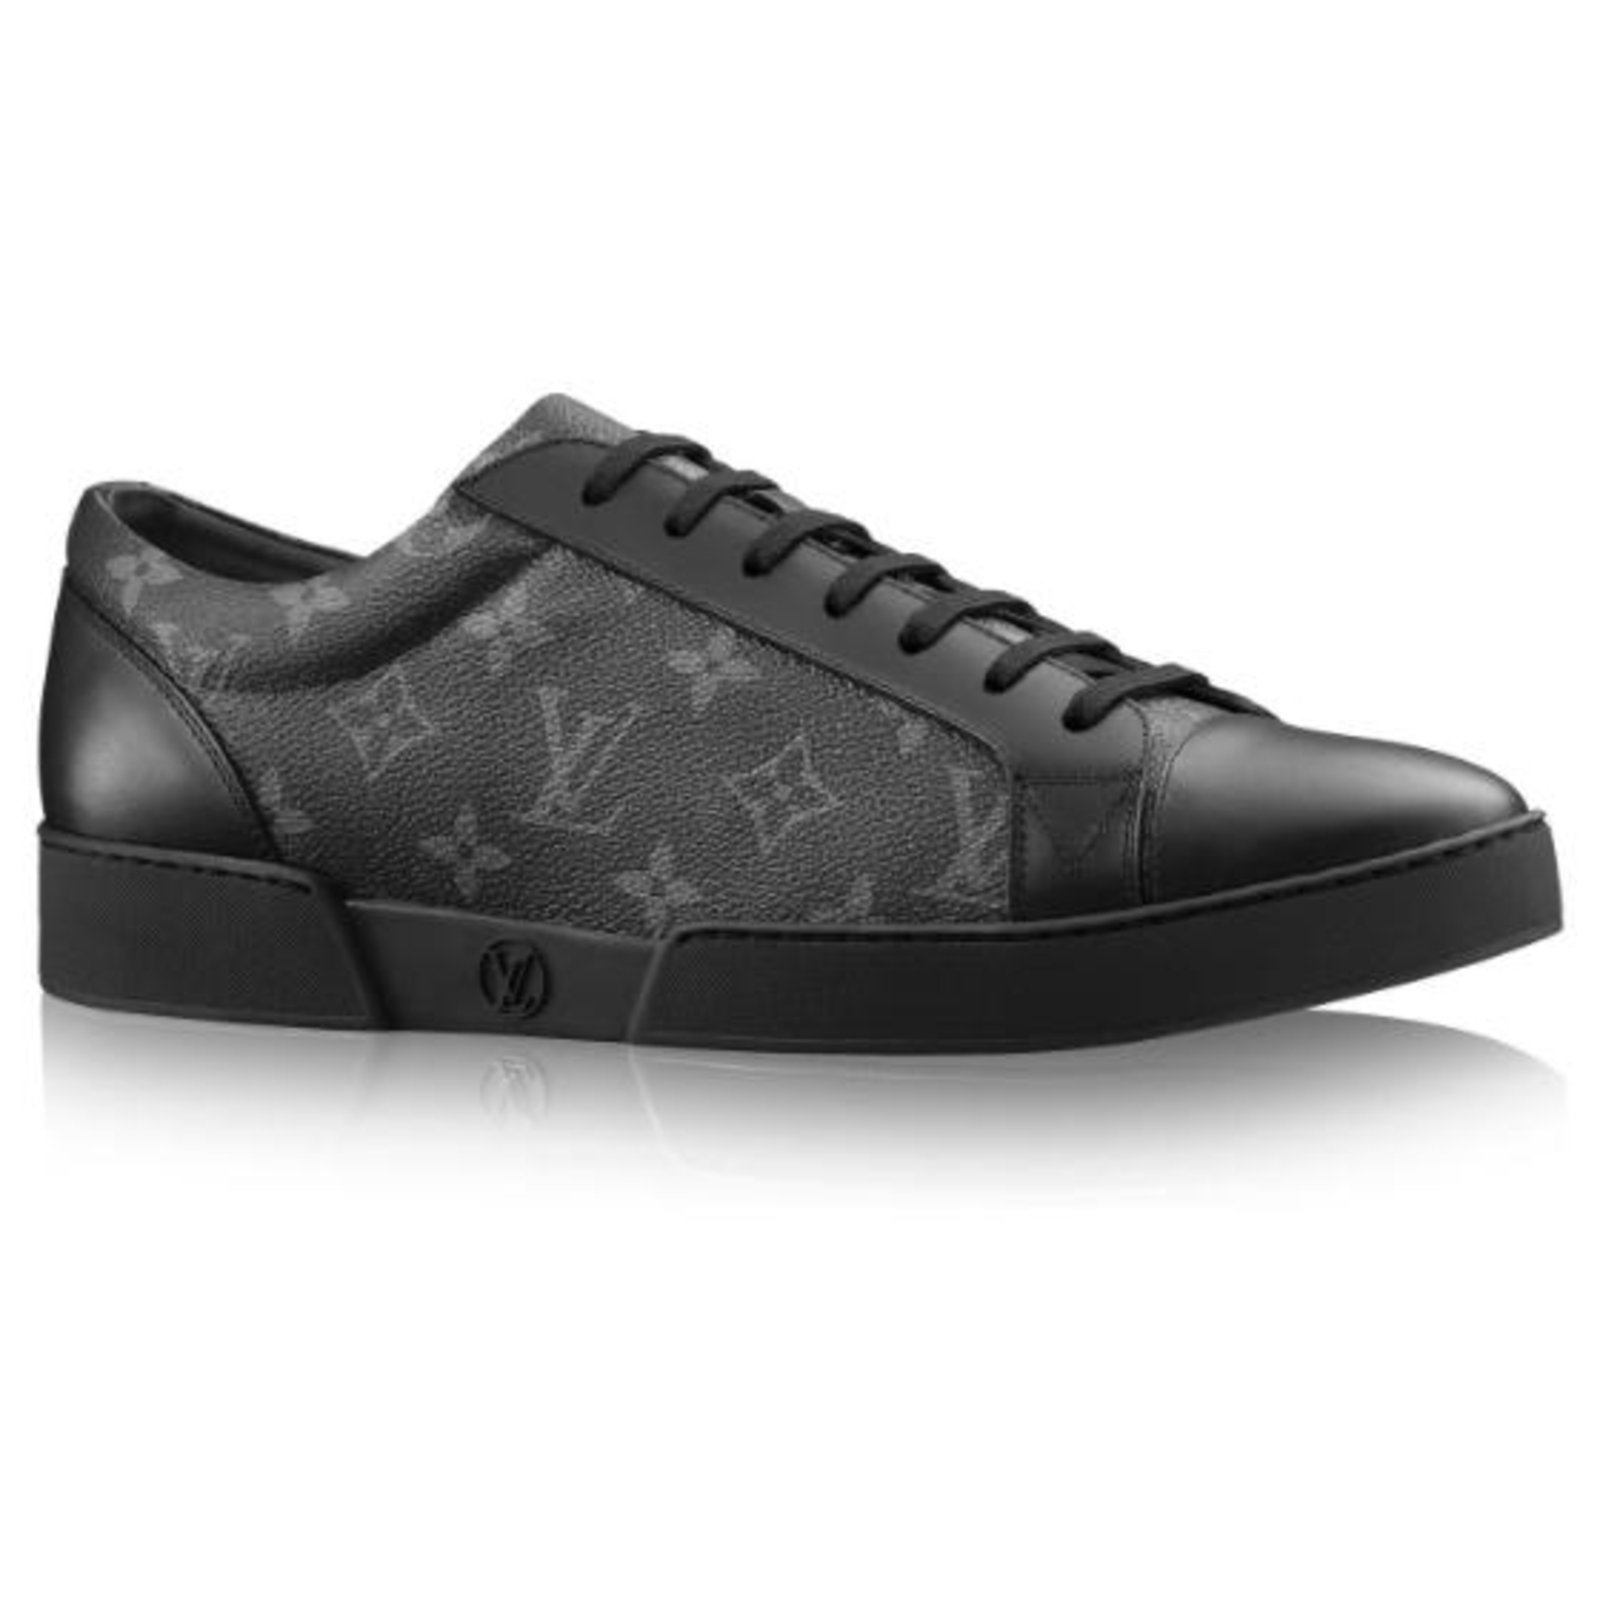 Chaussures homme Louis Vuitton phyton gaufrées. LV 10, US 11. 1850 $